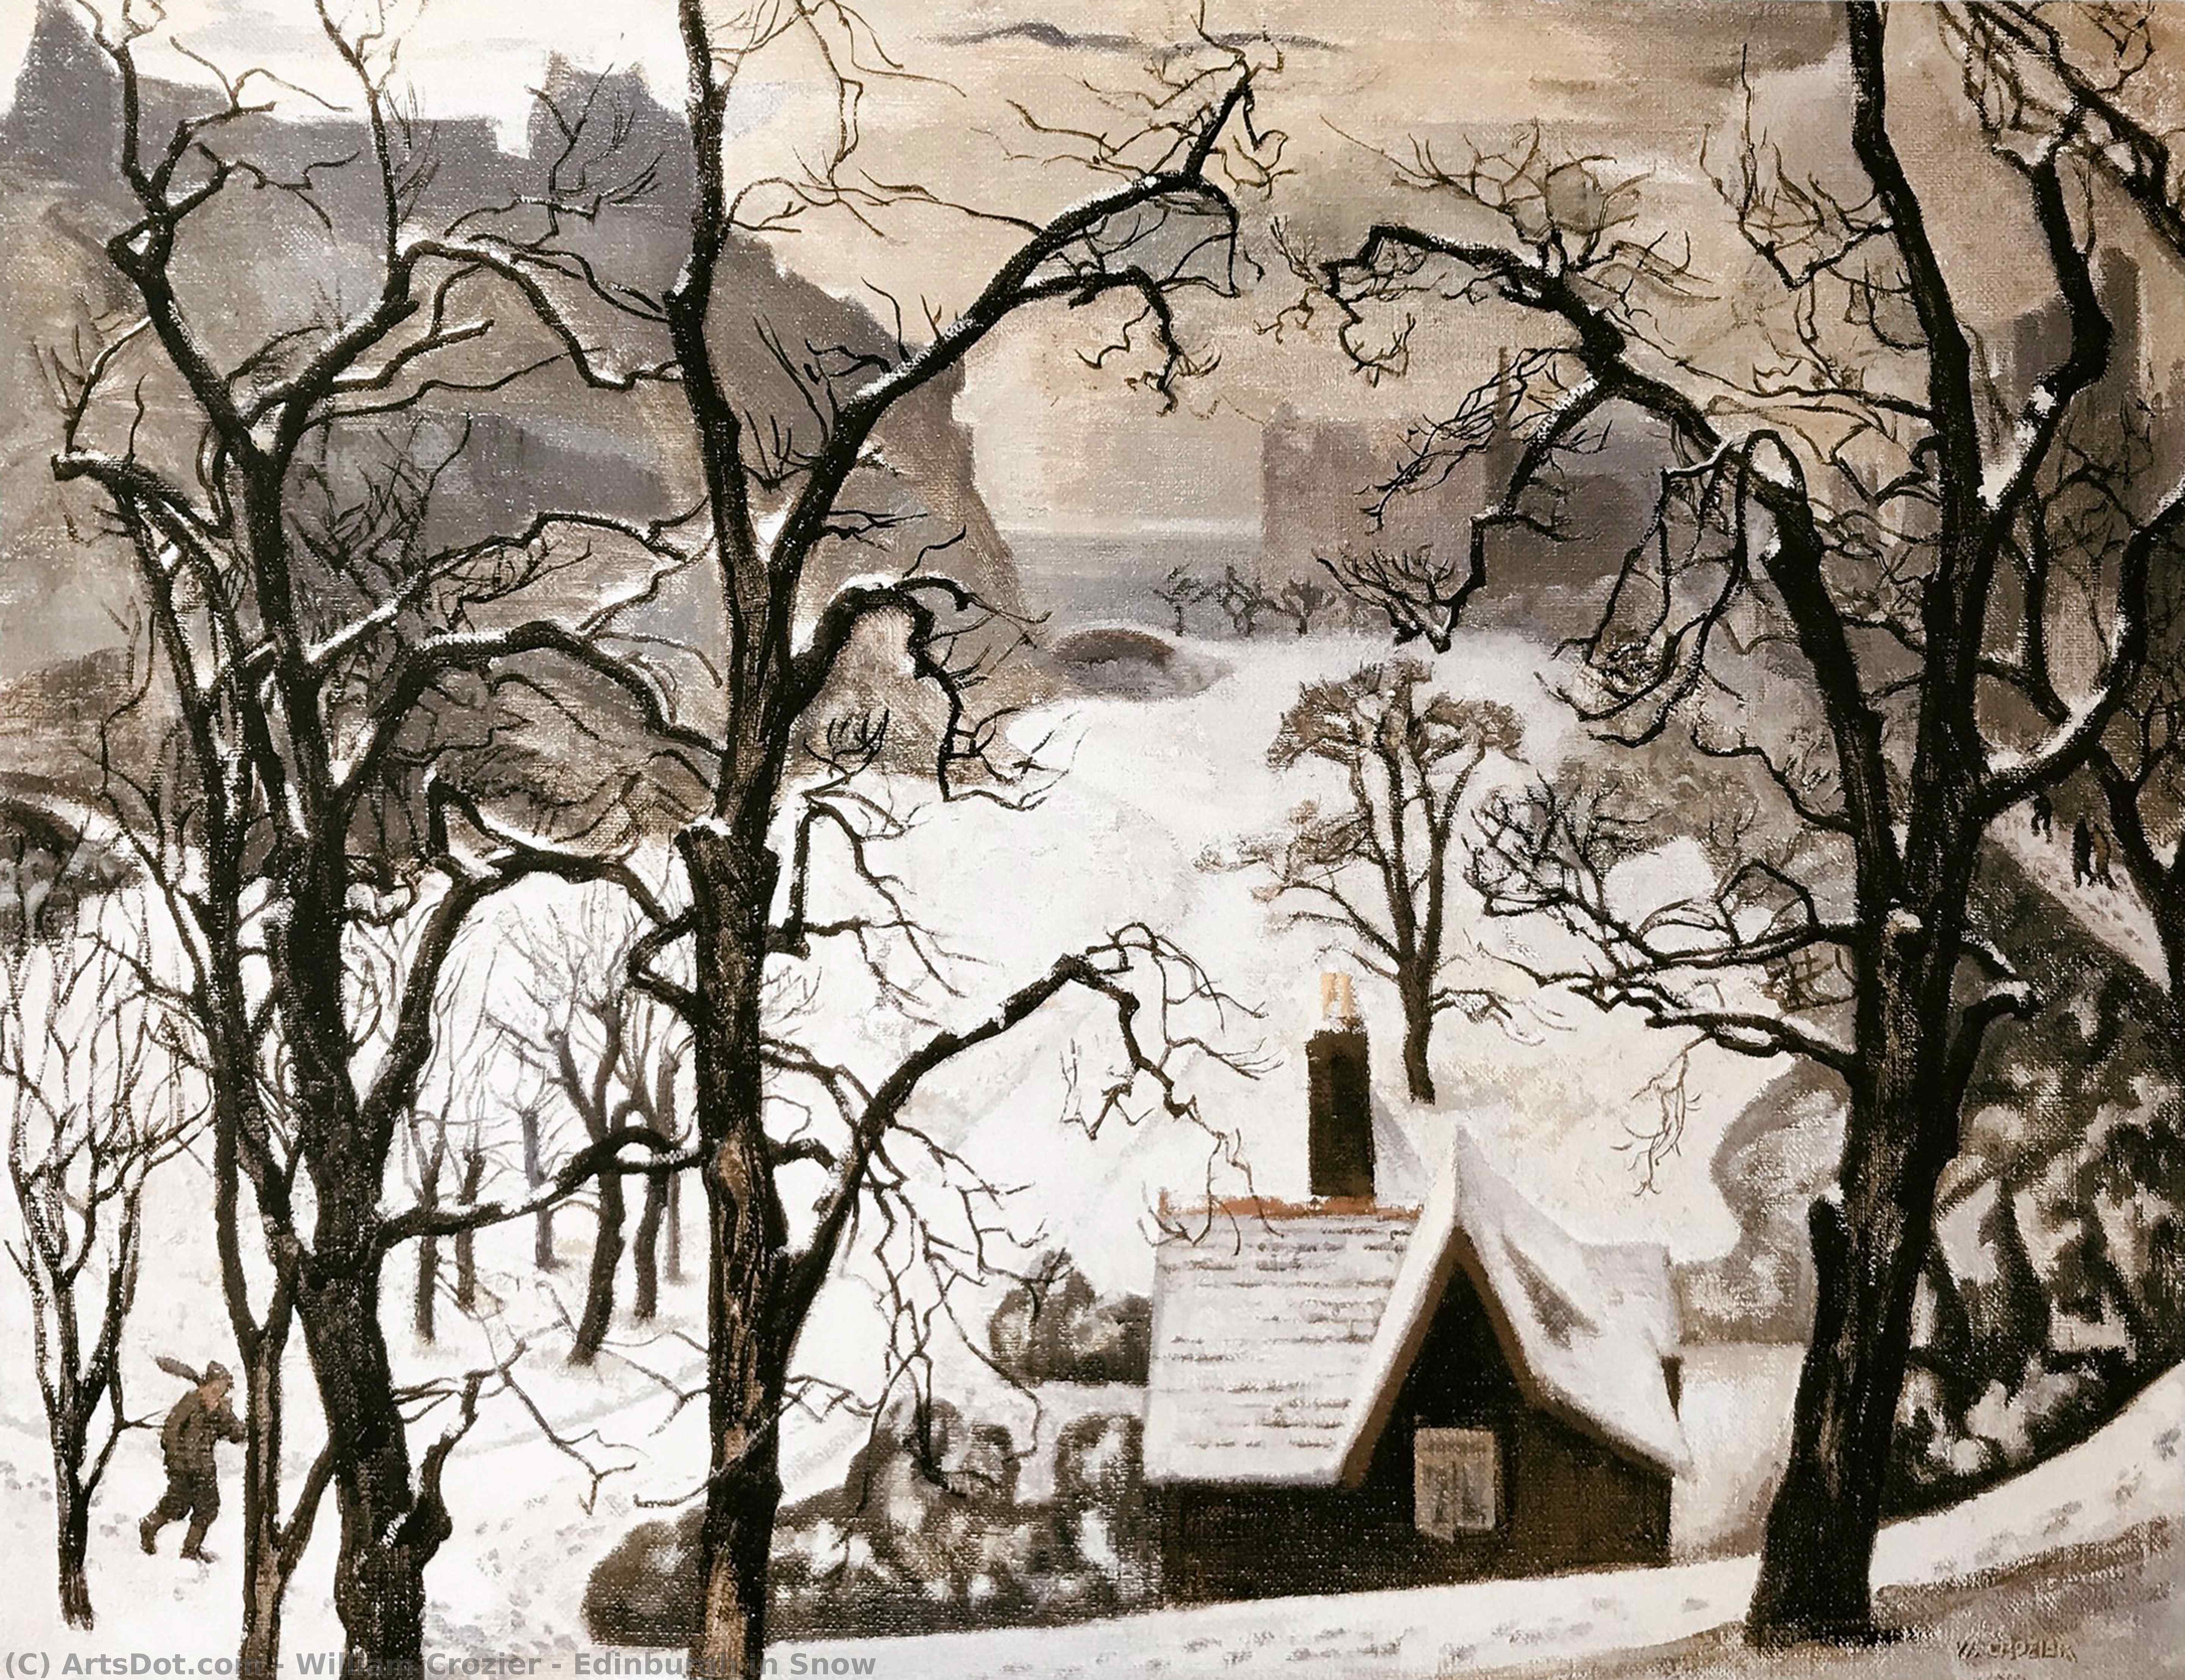 Edimburgo in Neve, 1928 di William Crozier (1930-2011) William Crozier | ArtsDot.com